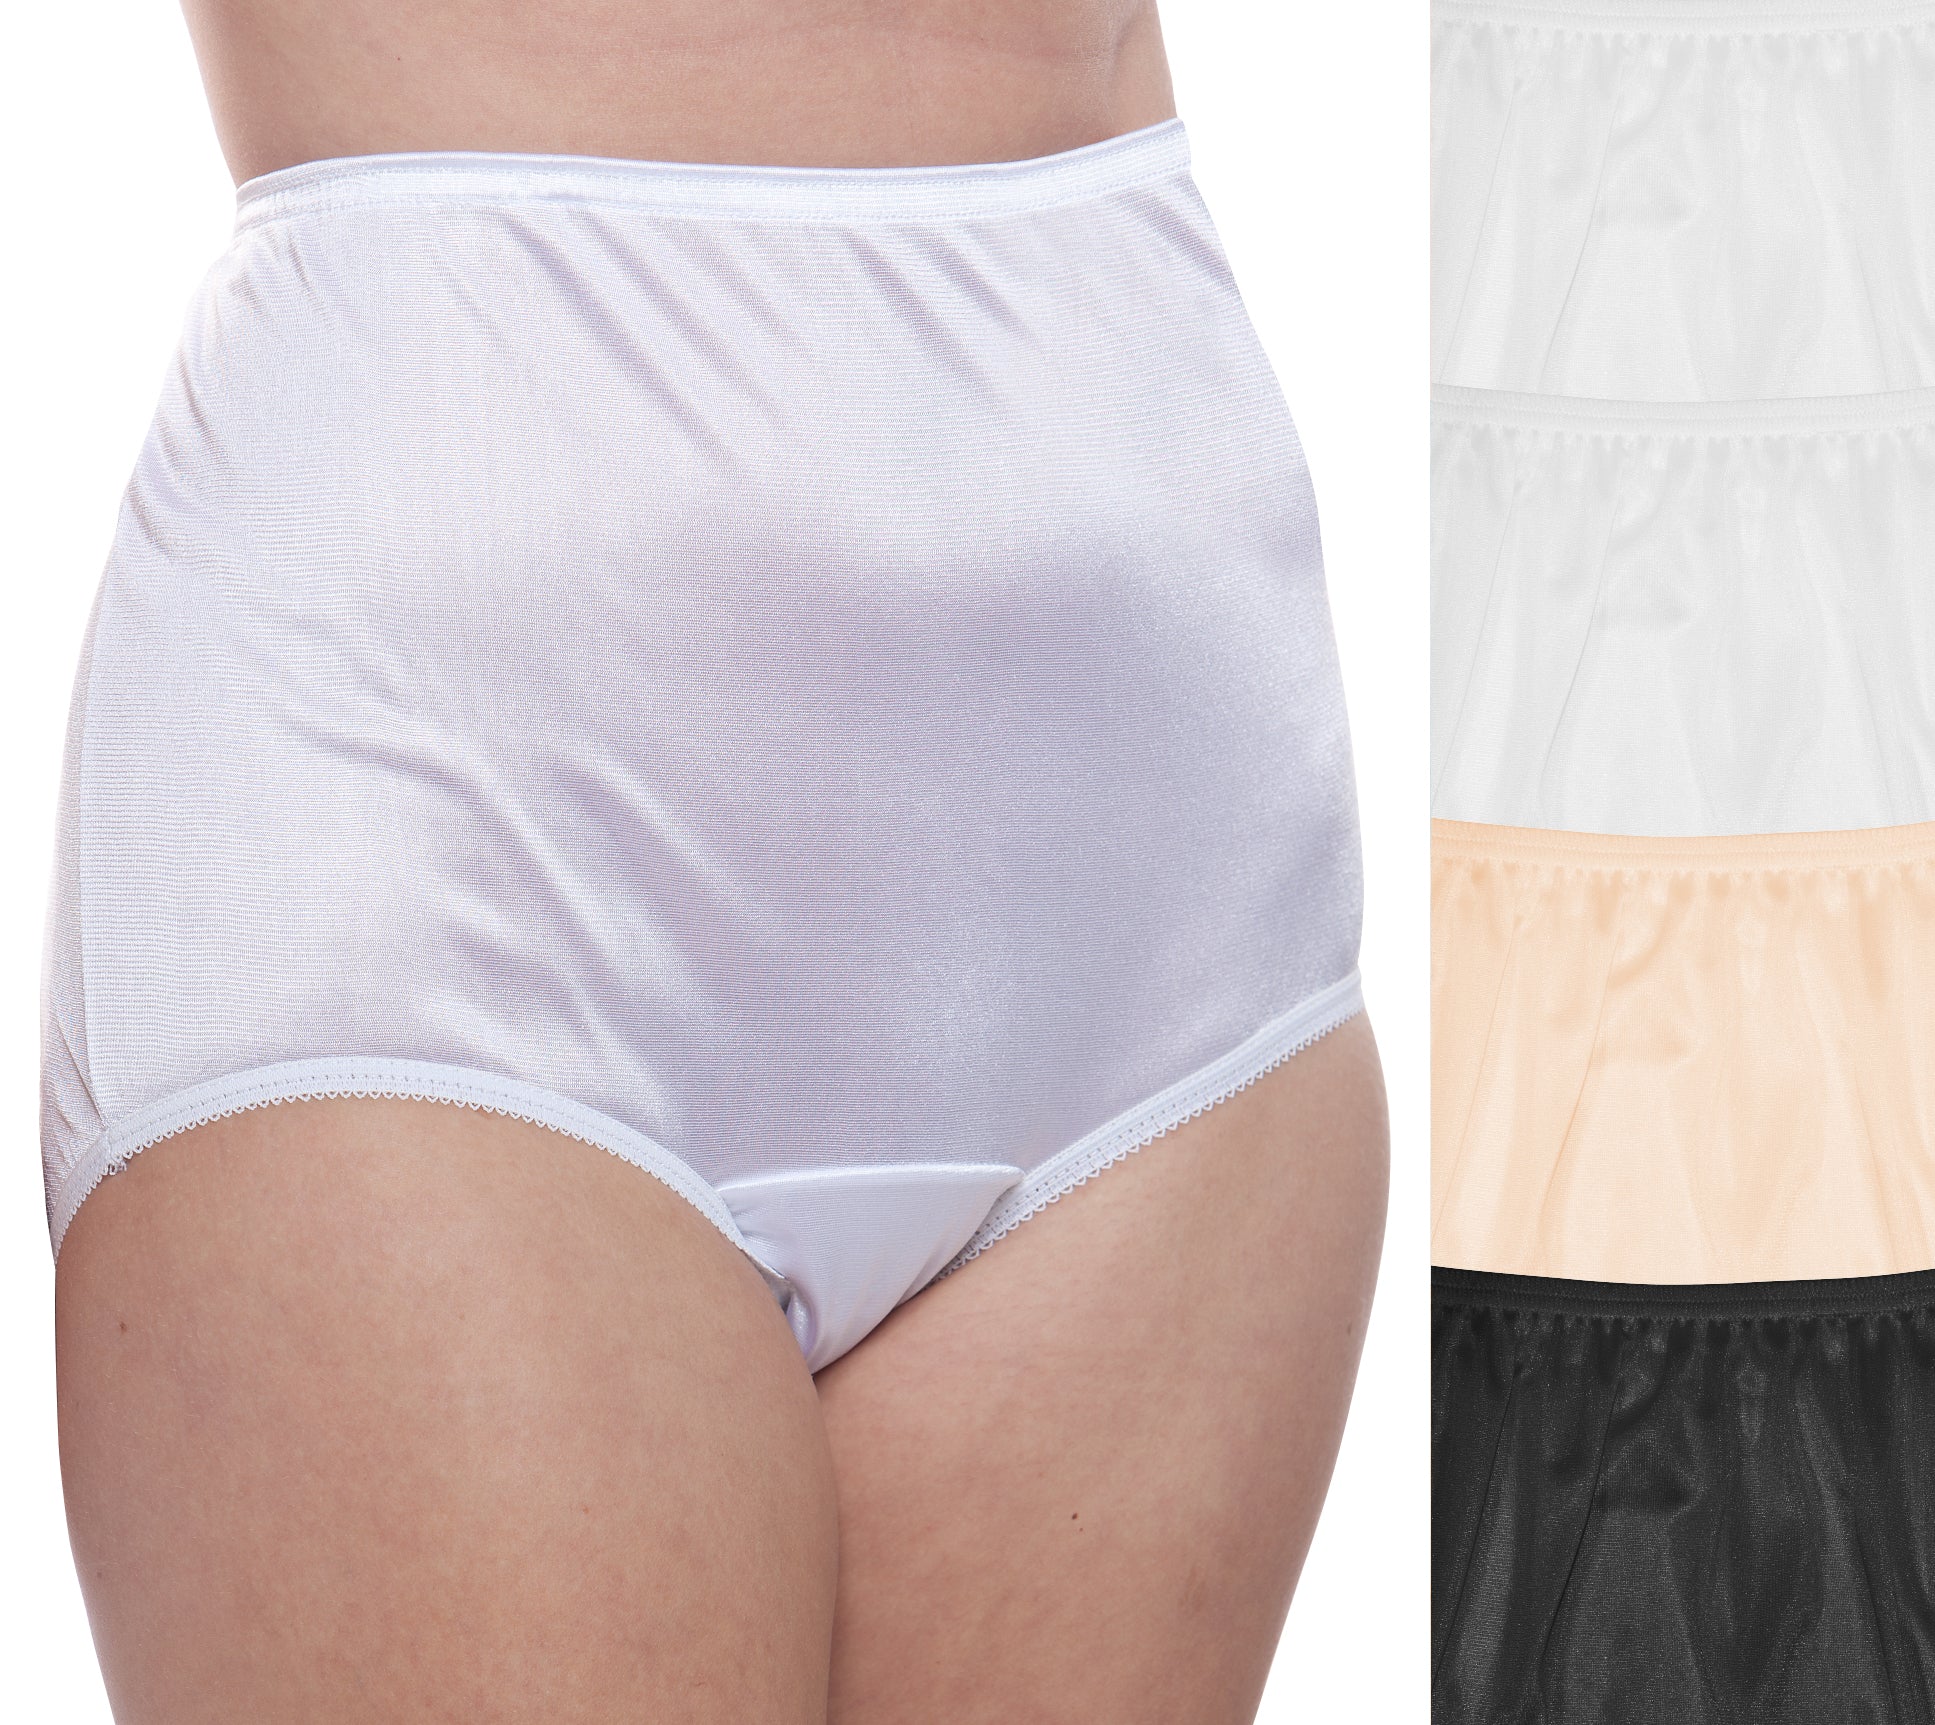 Women's Full Coverage Nylon Panty 10 Pack – Teri Lingerie